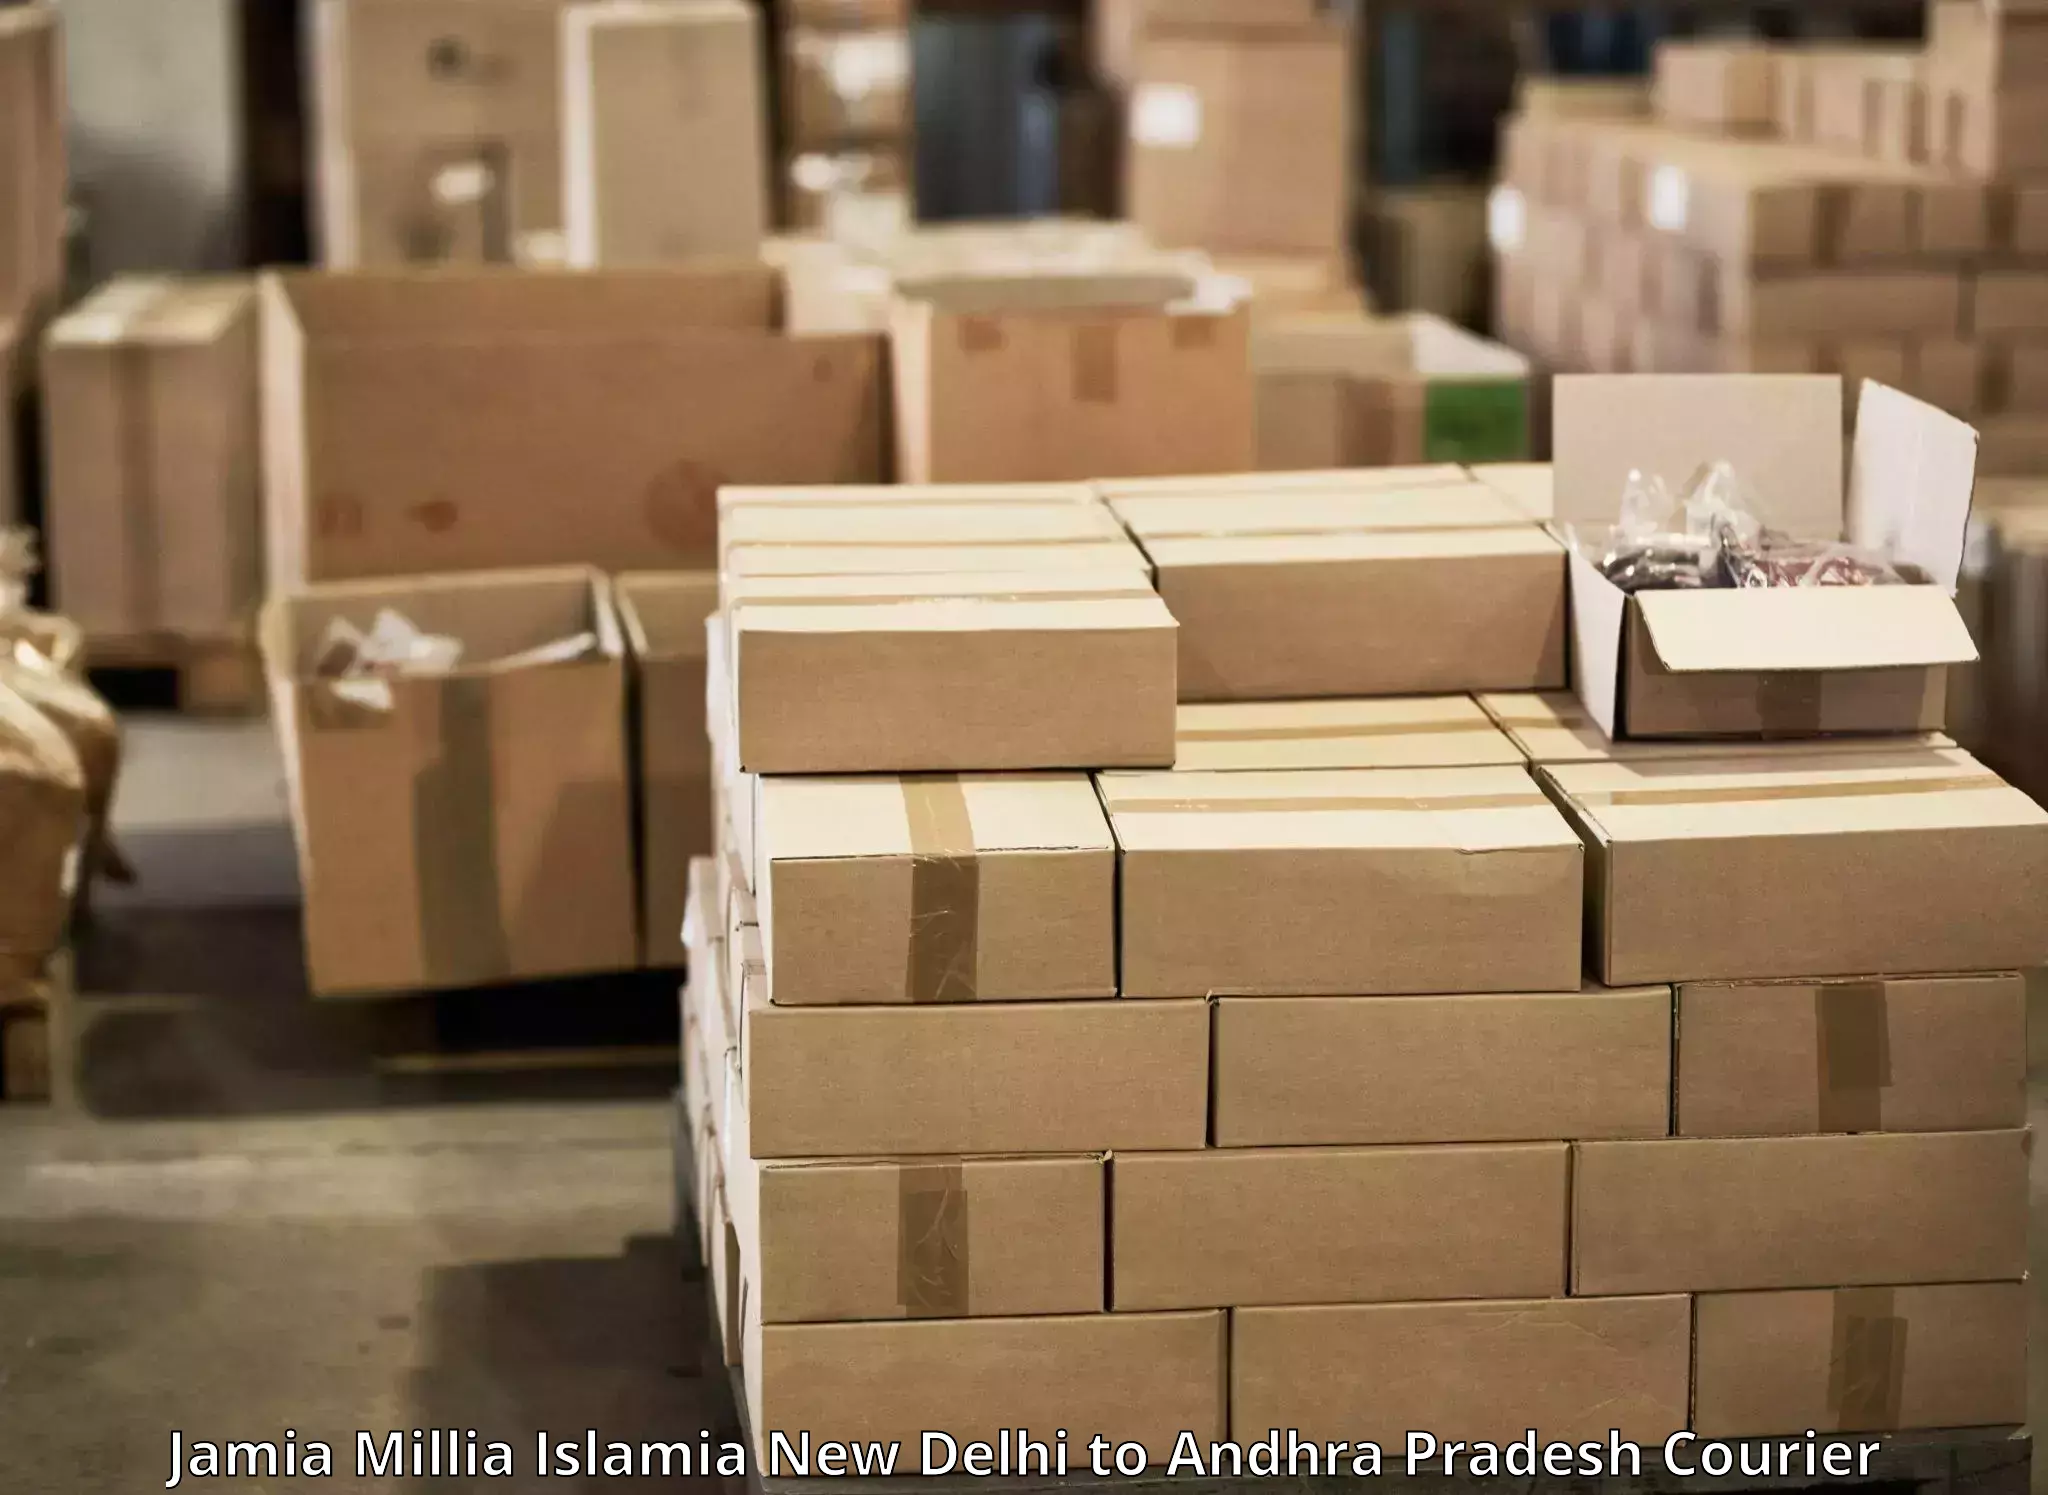 Multi-city courier Jamia Millia Islamia New Delhi to Tirupati